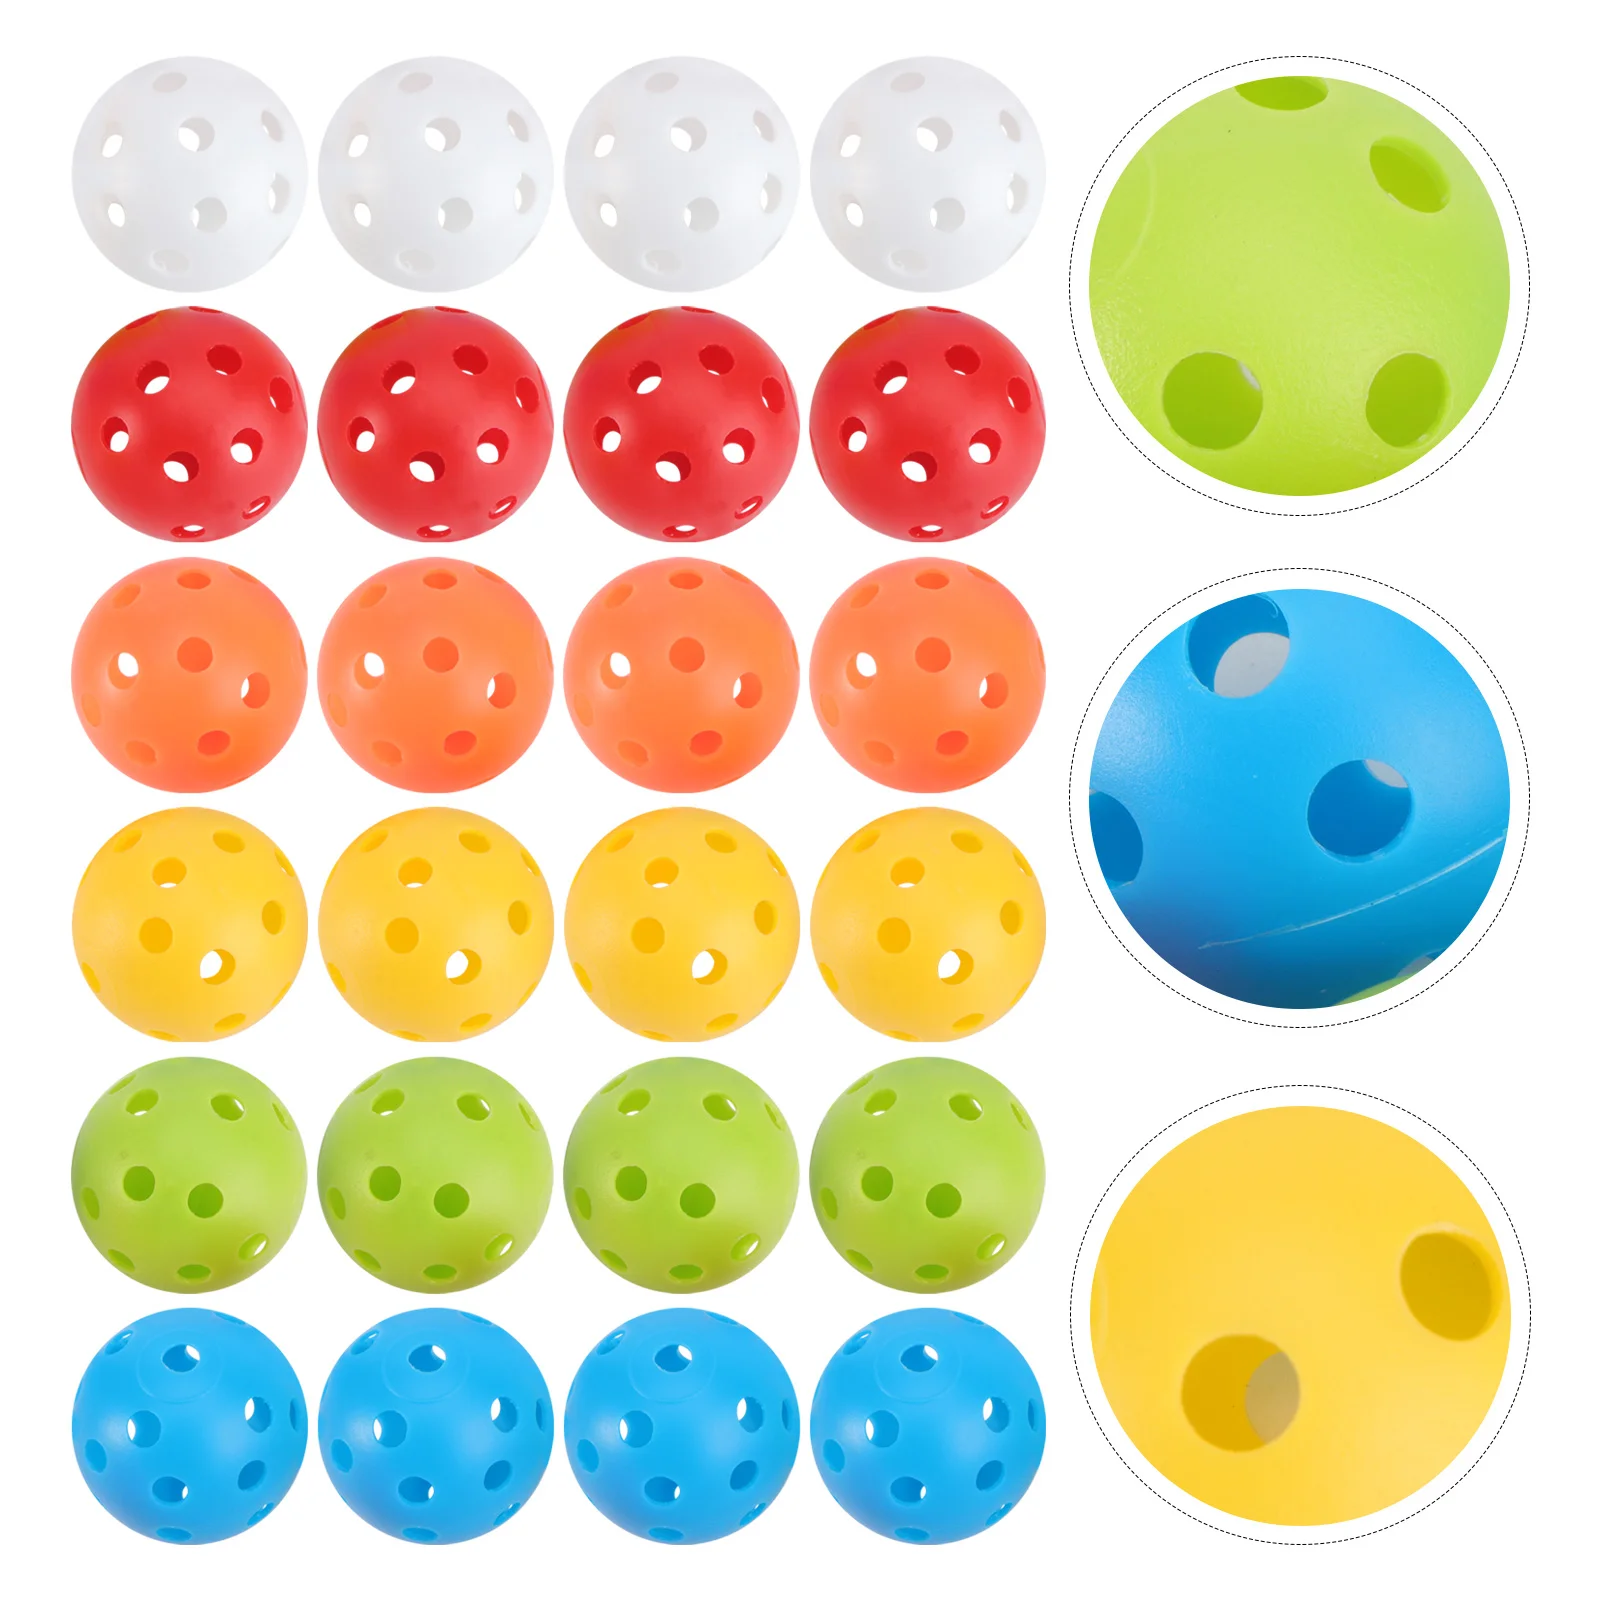 

Мячи для тренировок, перфорированные пустотелые мячи для тренировок, спортивных игр, б/у игрушки, размер 5, 24 шт.